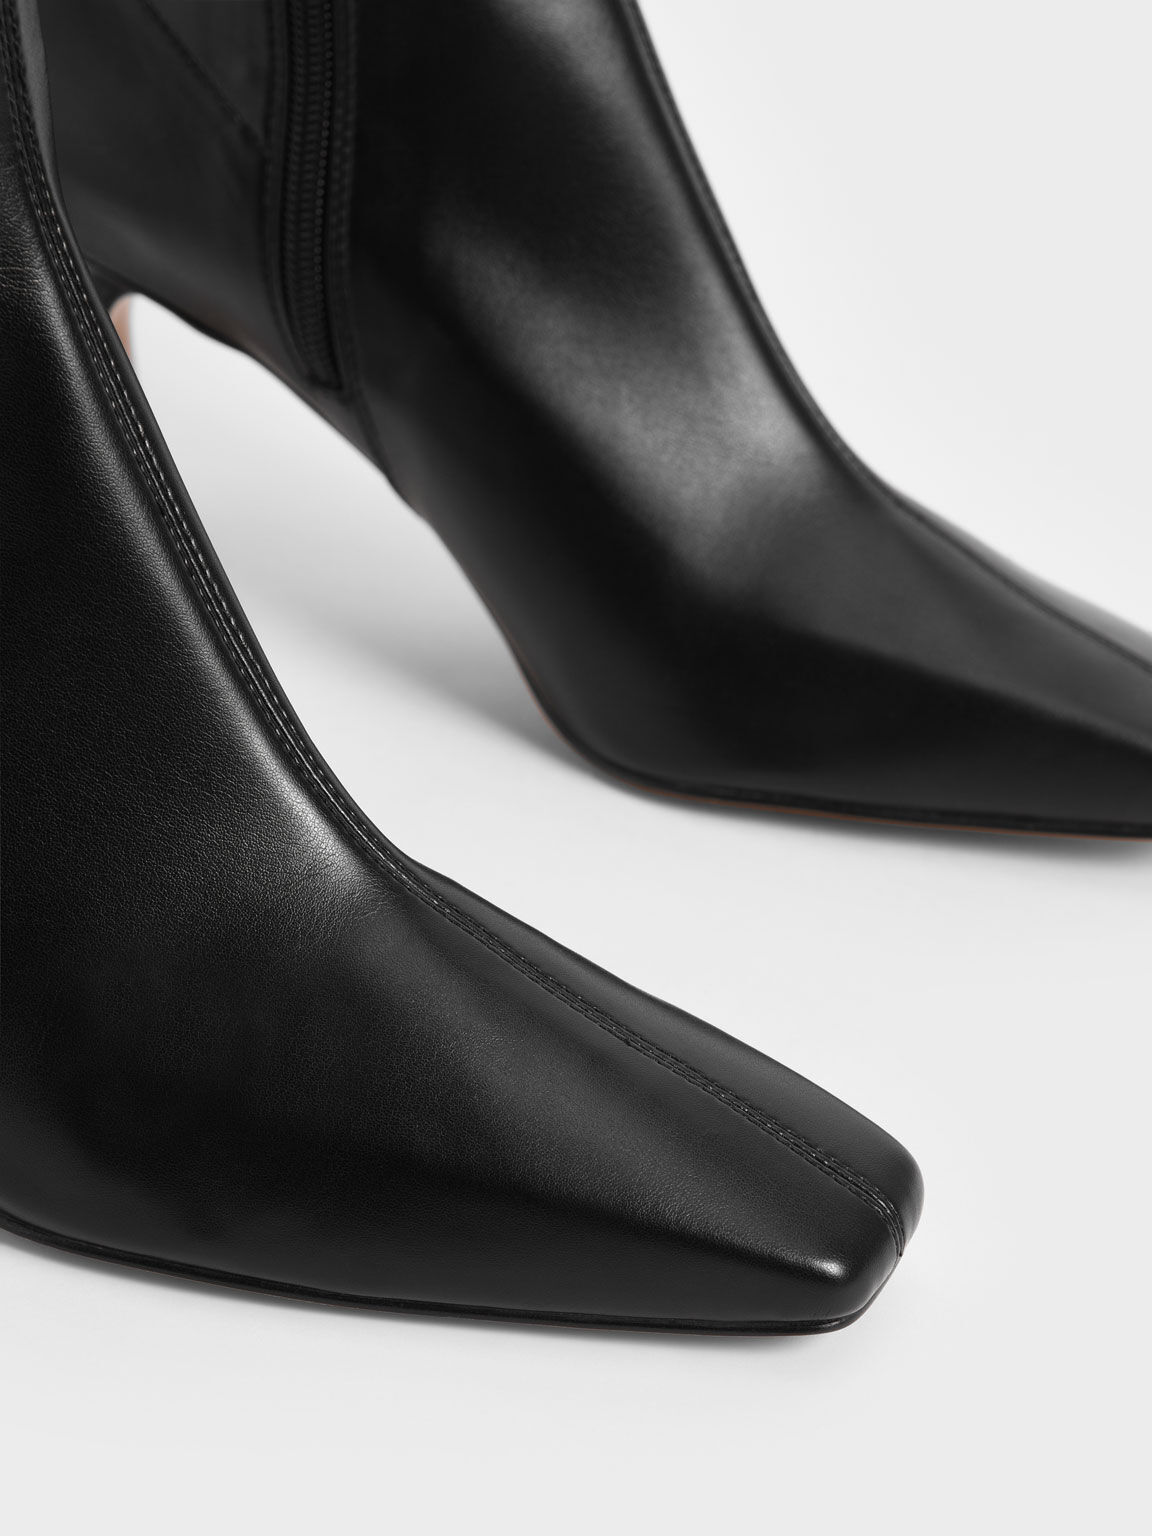 Sculptural Heel Ankle Boots, Black, hi-res